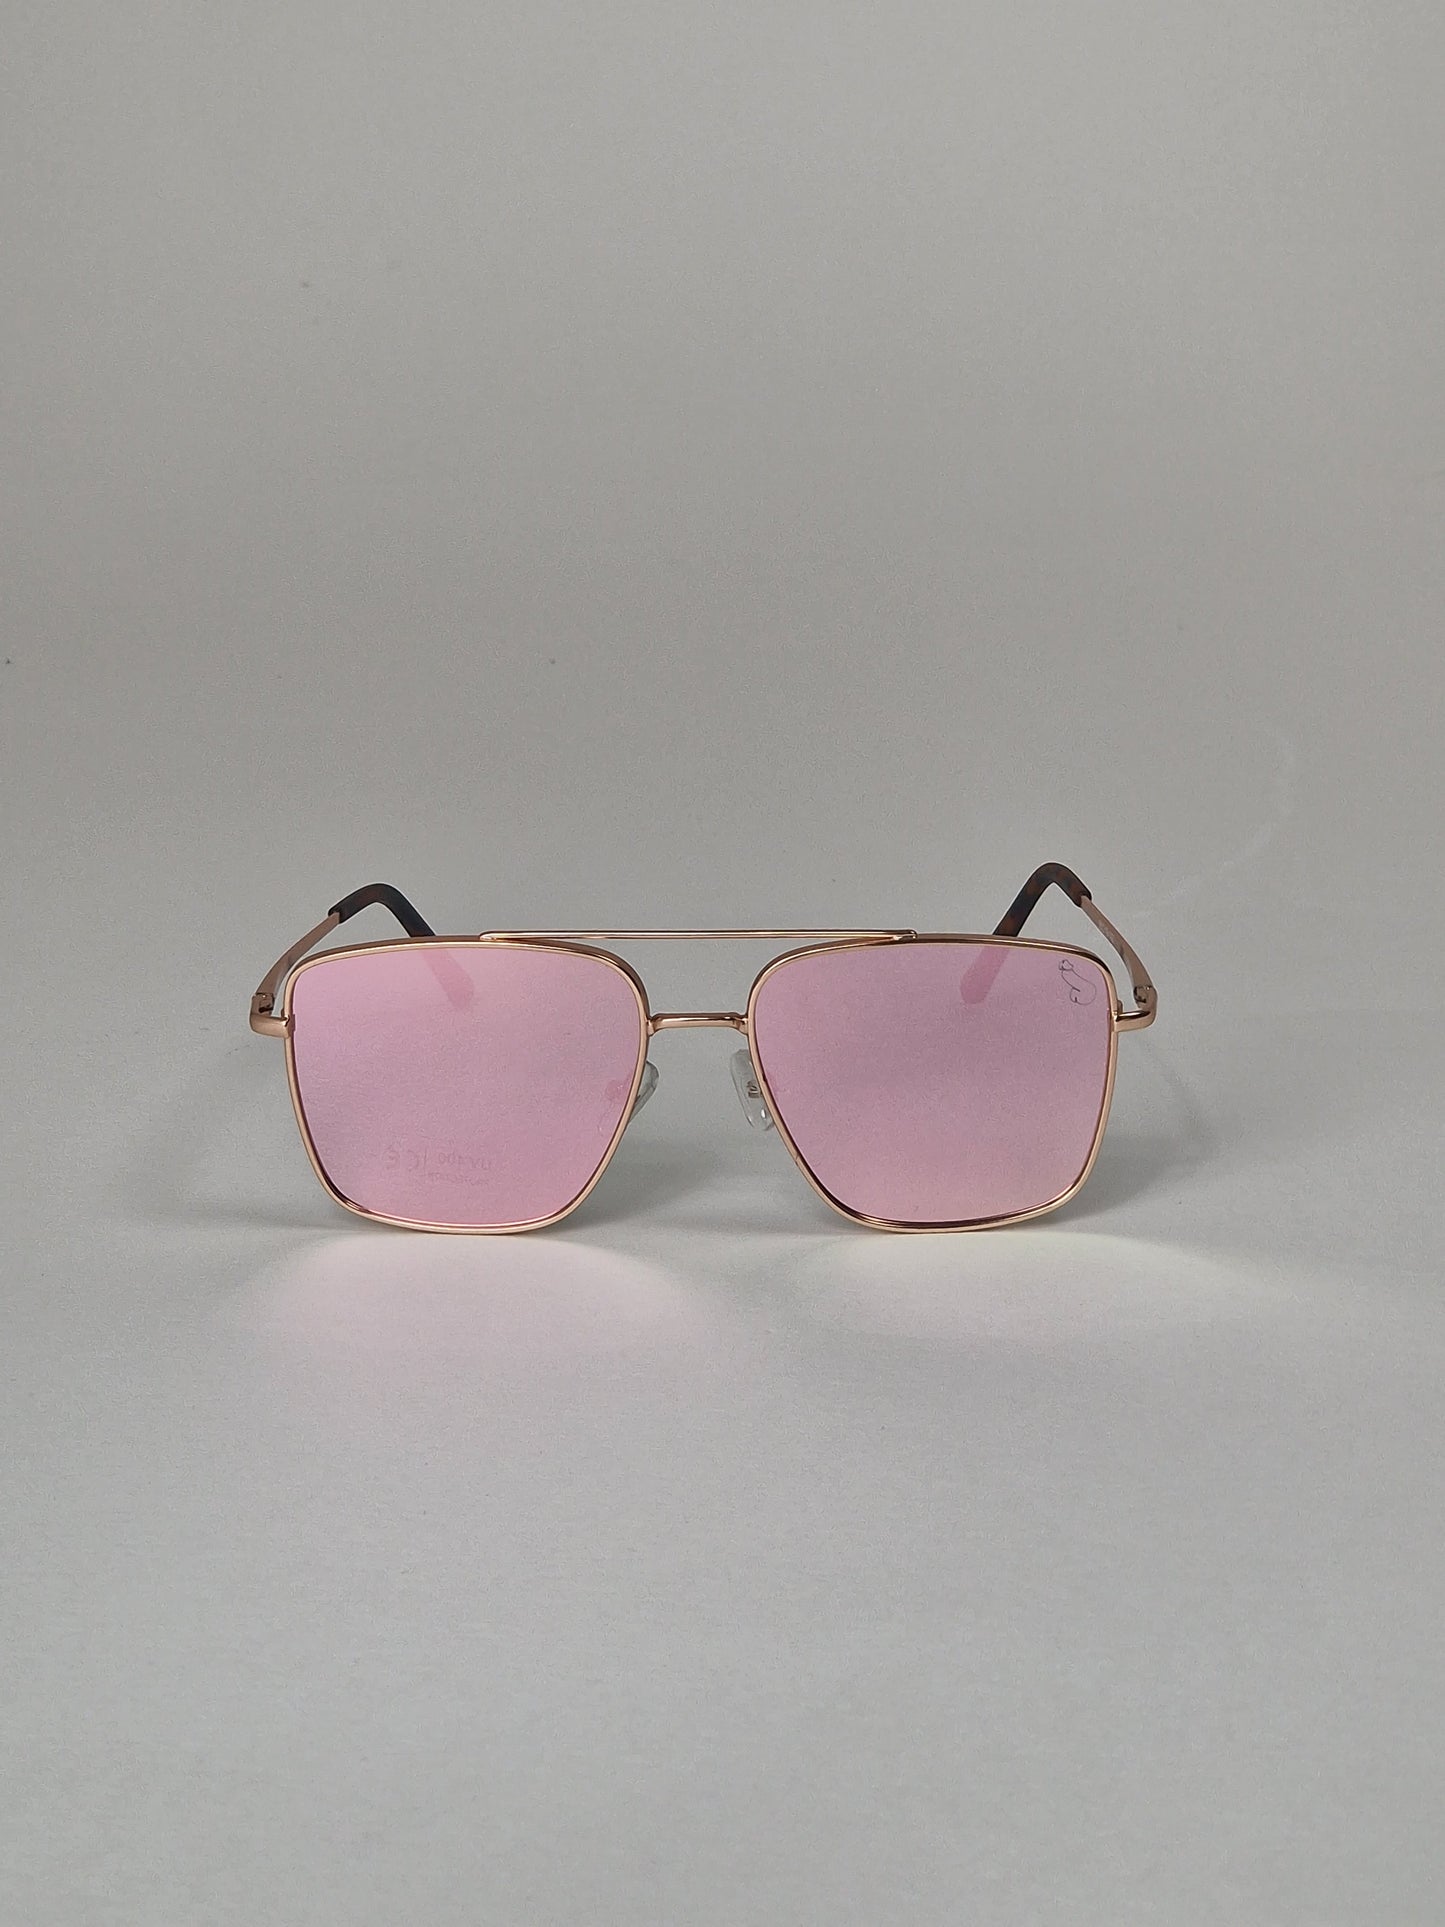 Solglasögon, modell 34 - Rosa spegelglas